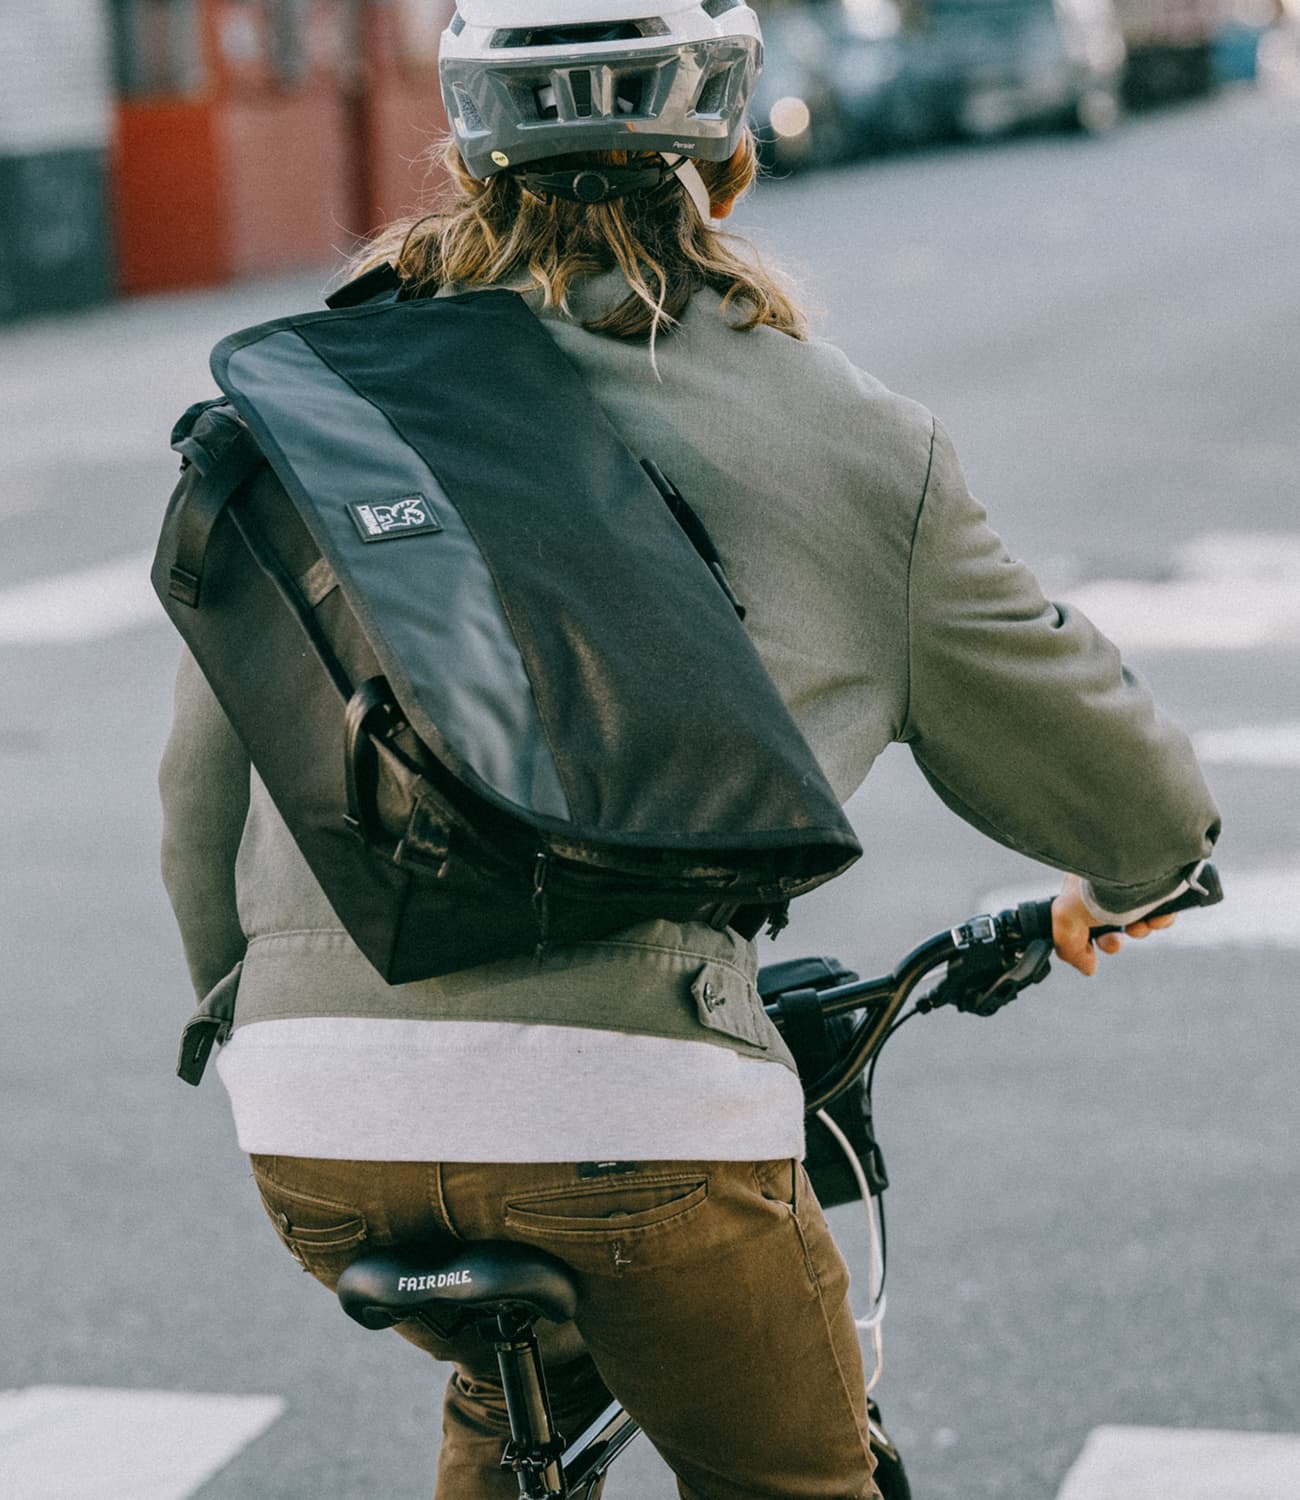 Bike Messenger Bags, Lifetime Warranty